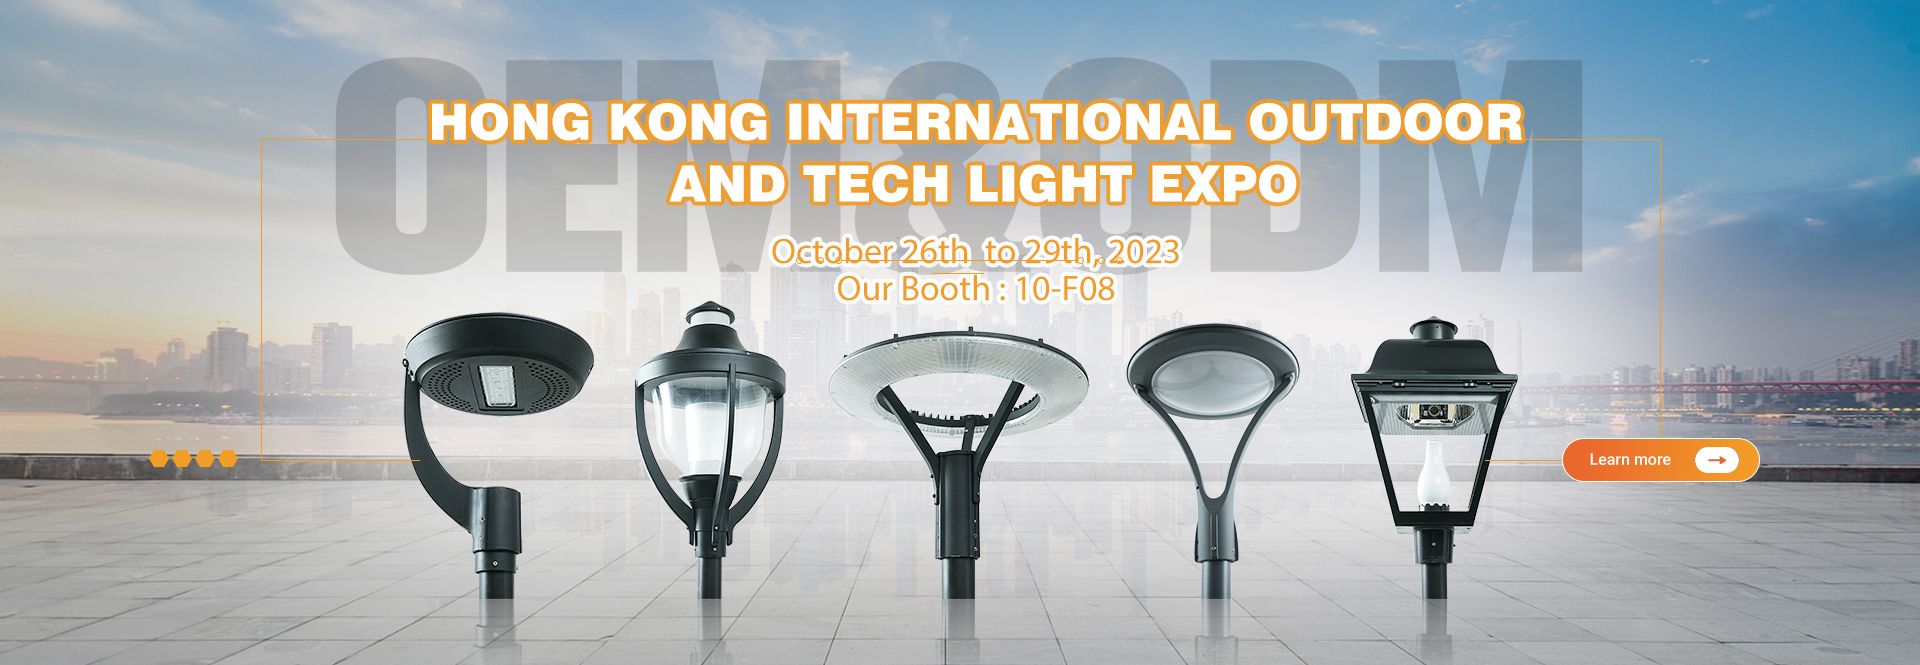 2023 Hong Kong International Outdoor & Tech Light Expo